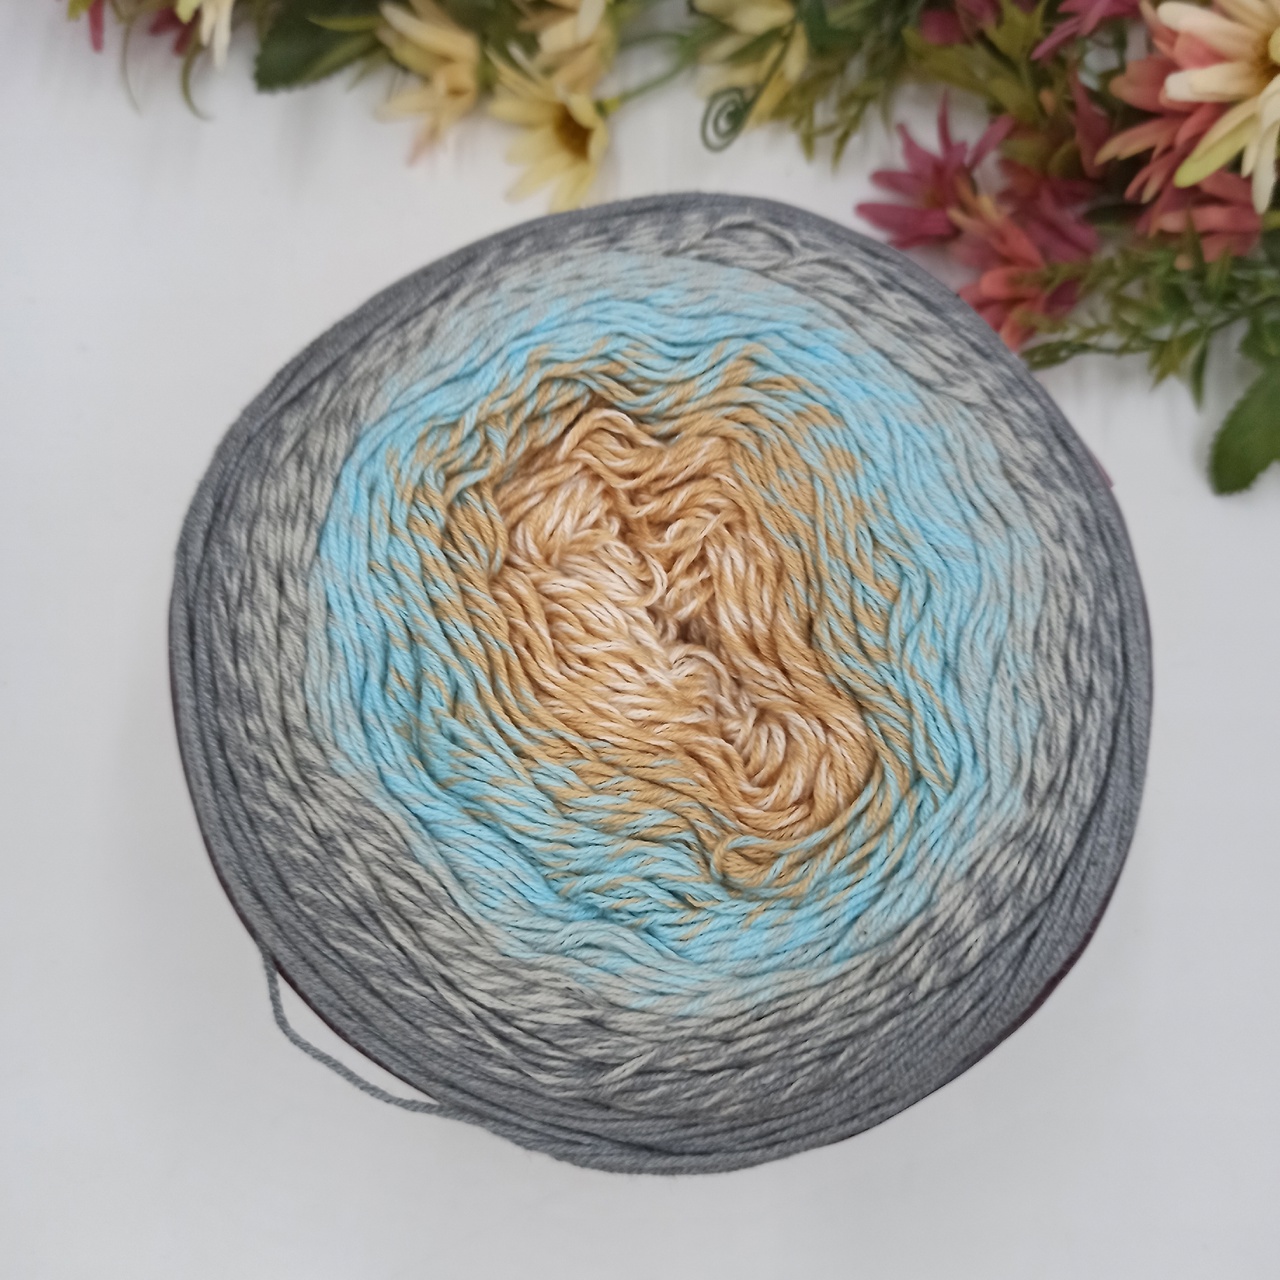 Хлопок секционного окрашивания  Flowers Yarn art 268, Турция Серый-голубой-песок